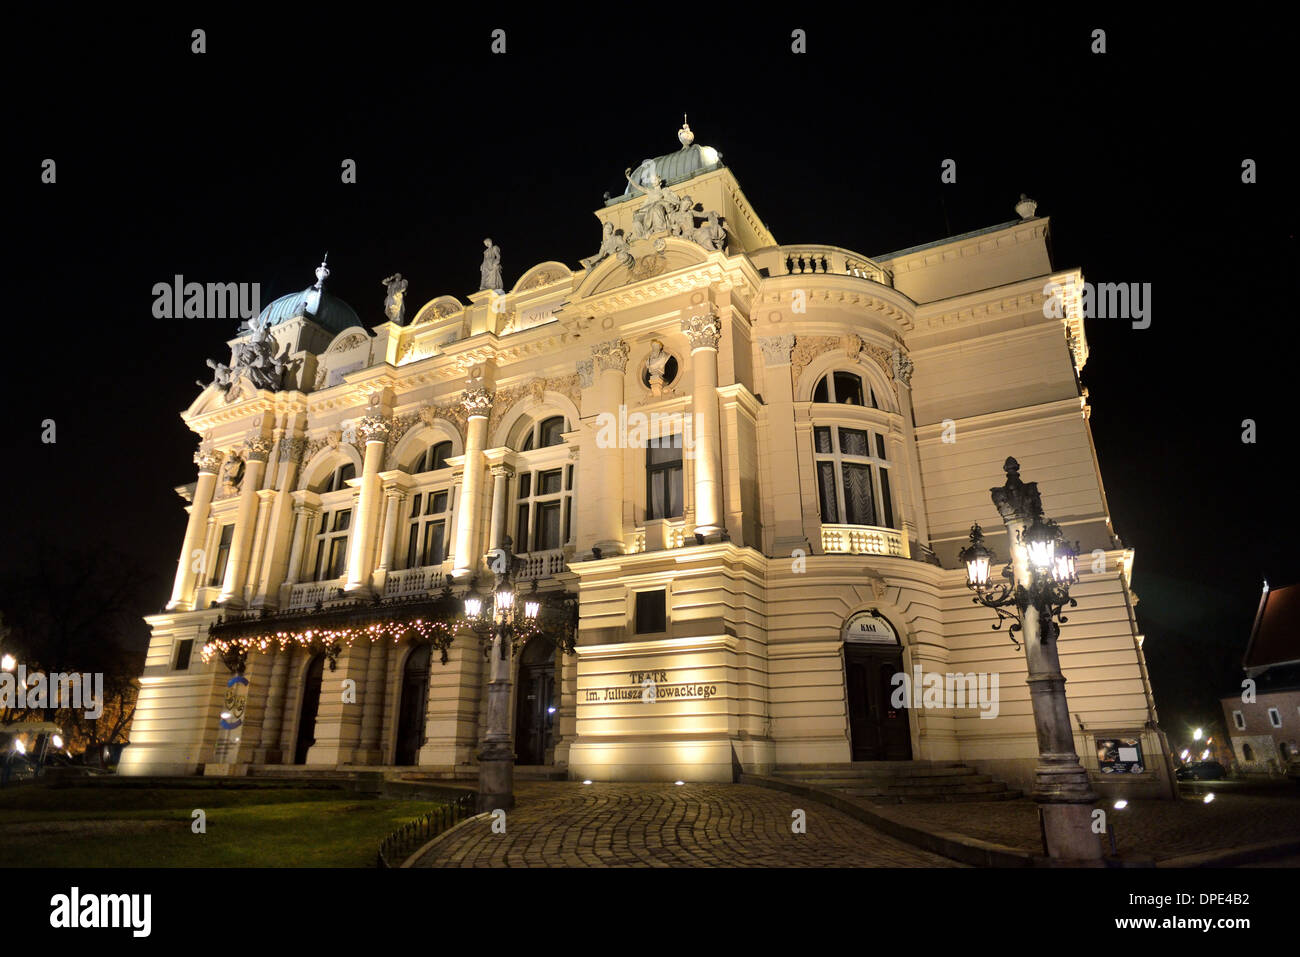 Krakow (Cracow), Juliusz Slowacki Theatre Krakov Poland frontage night view.  European Baroque theatres. Stock Photo